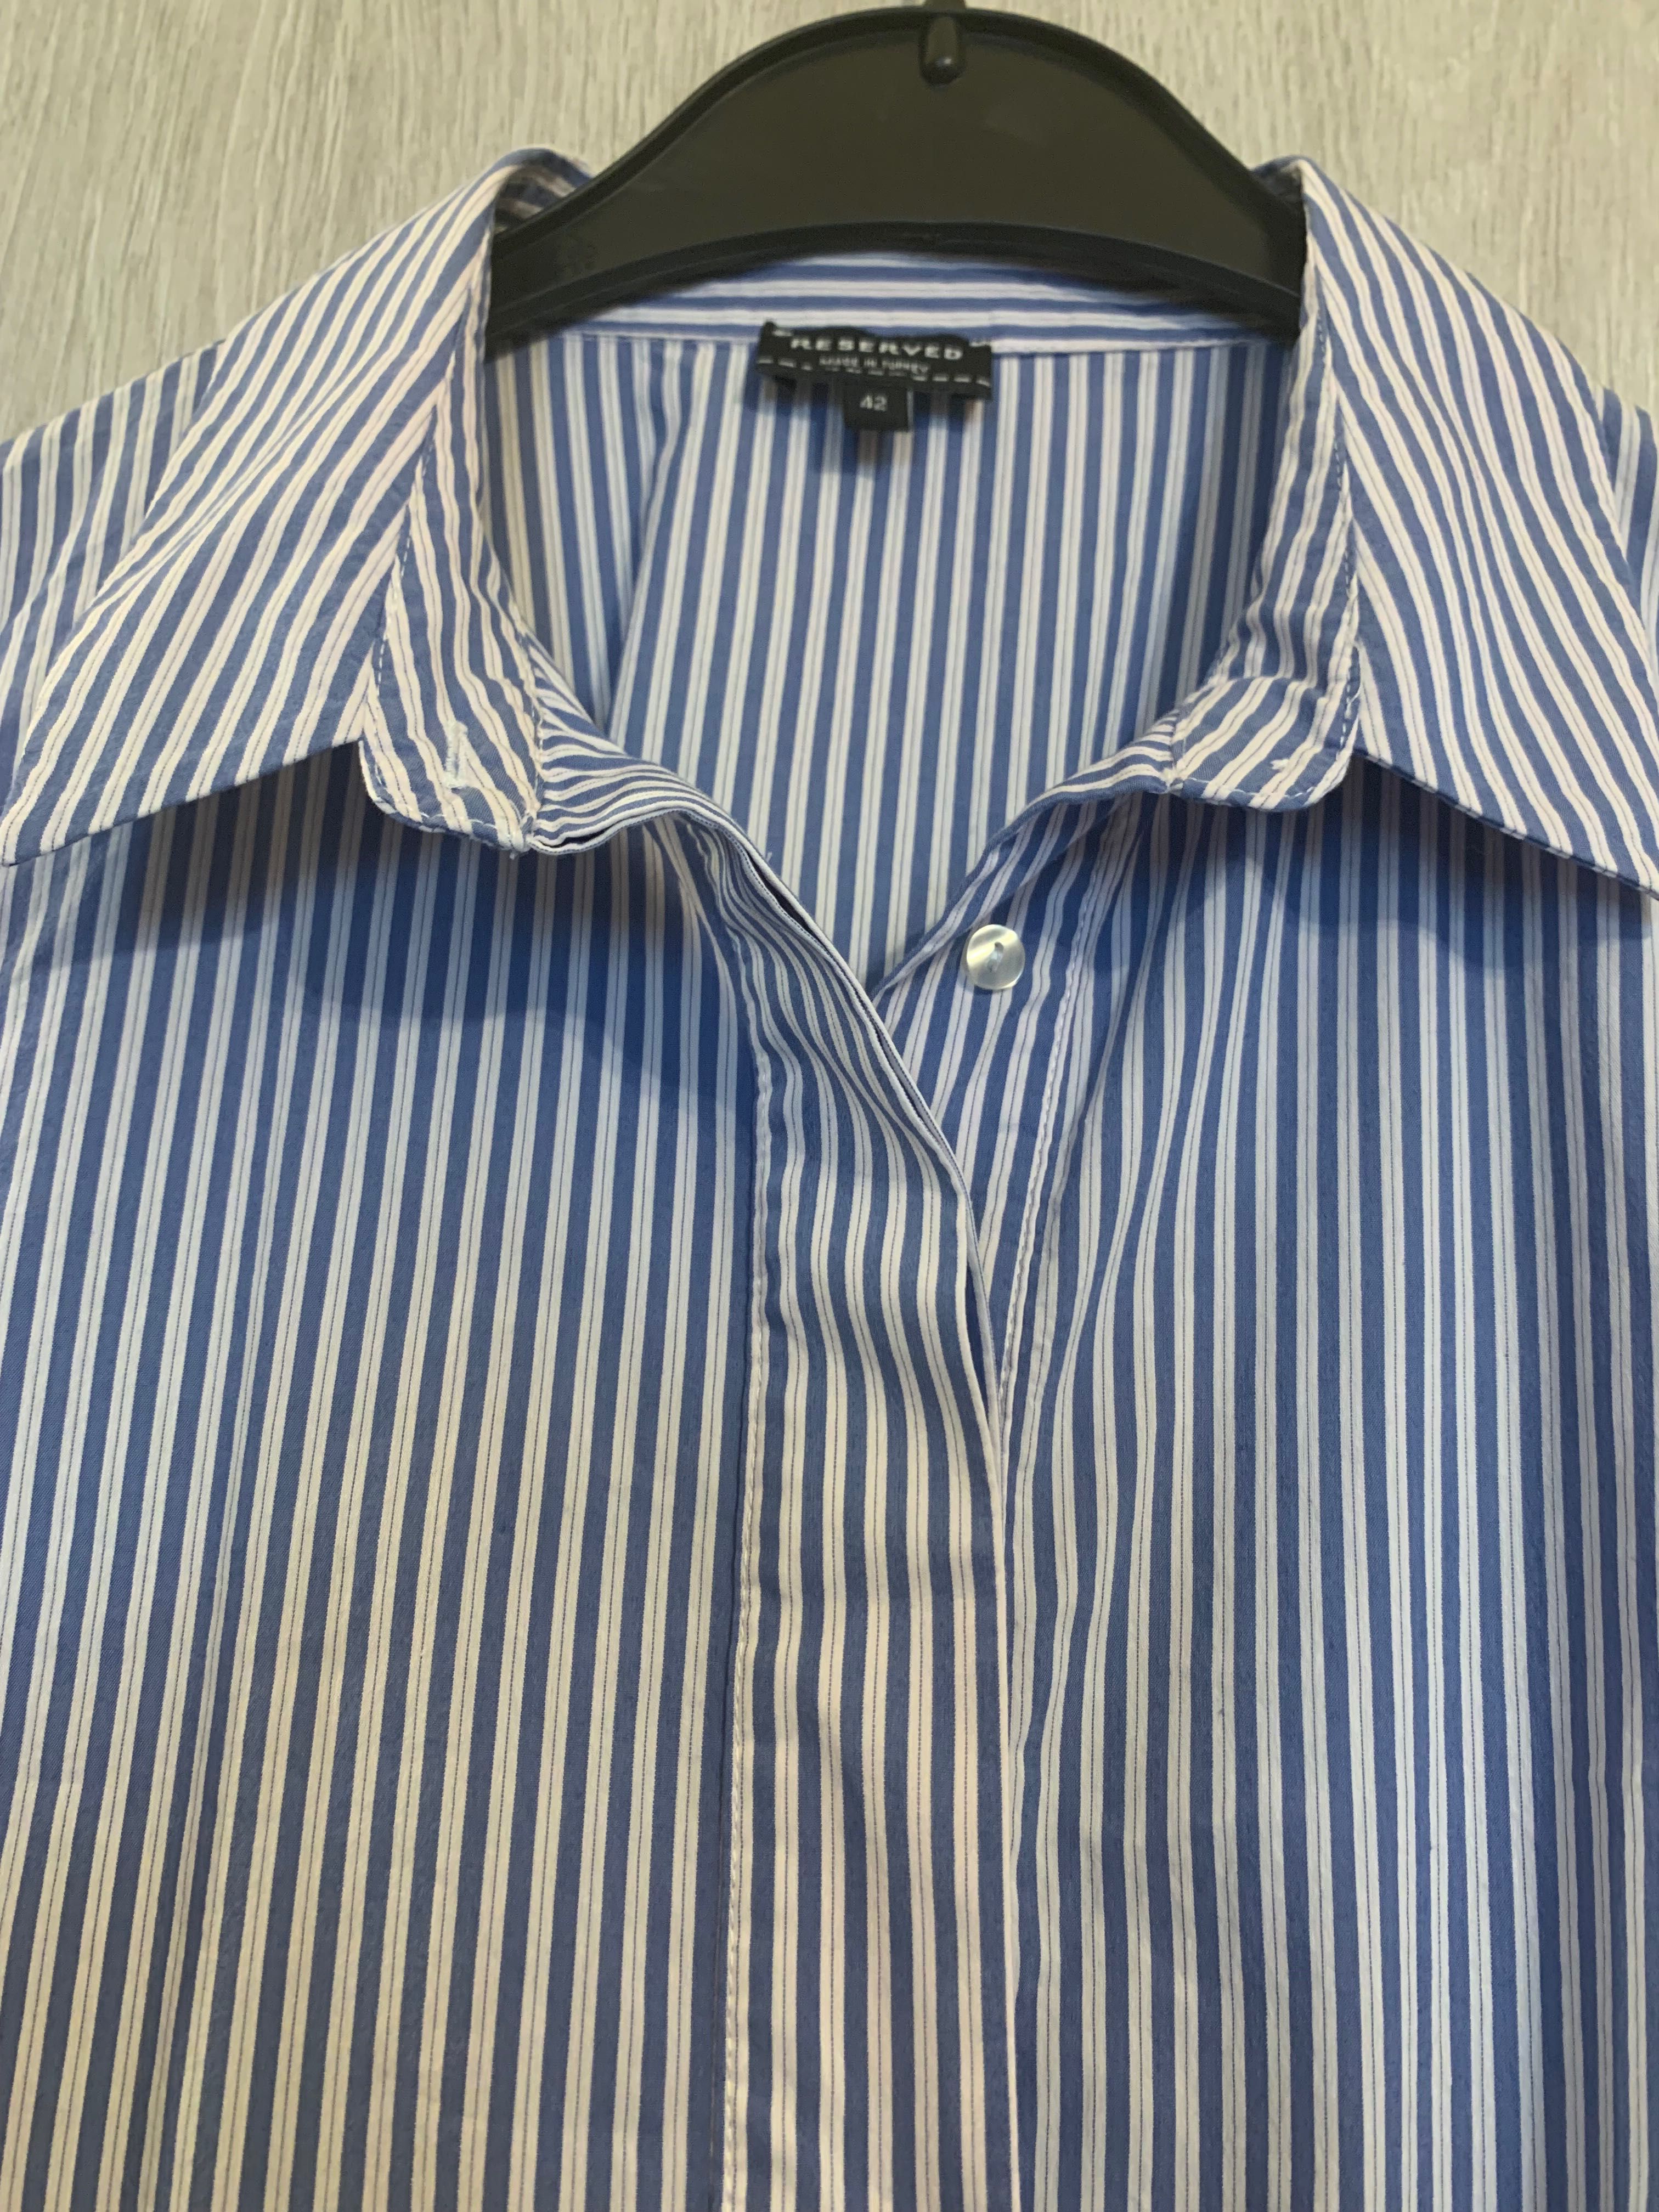 Bluzka Reserved biało niebieska, w paski 42